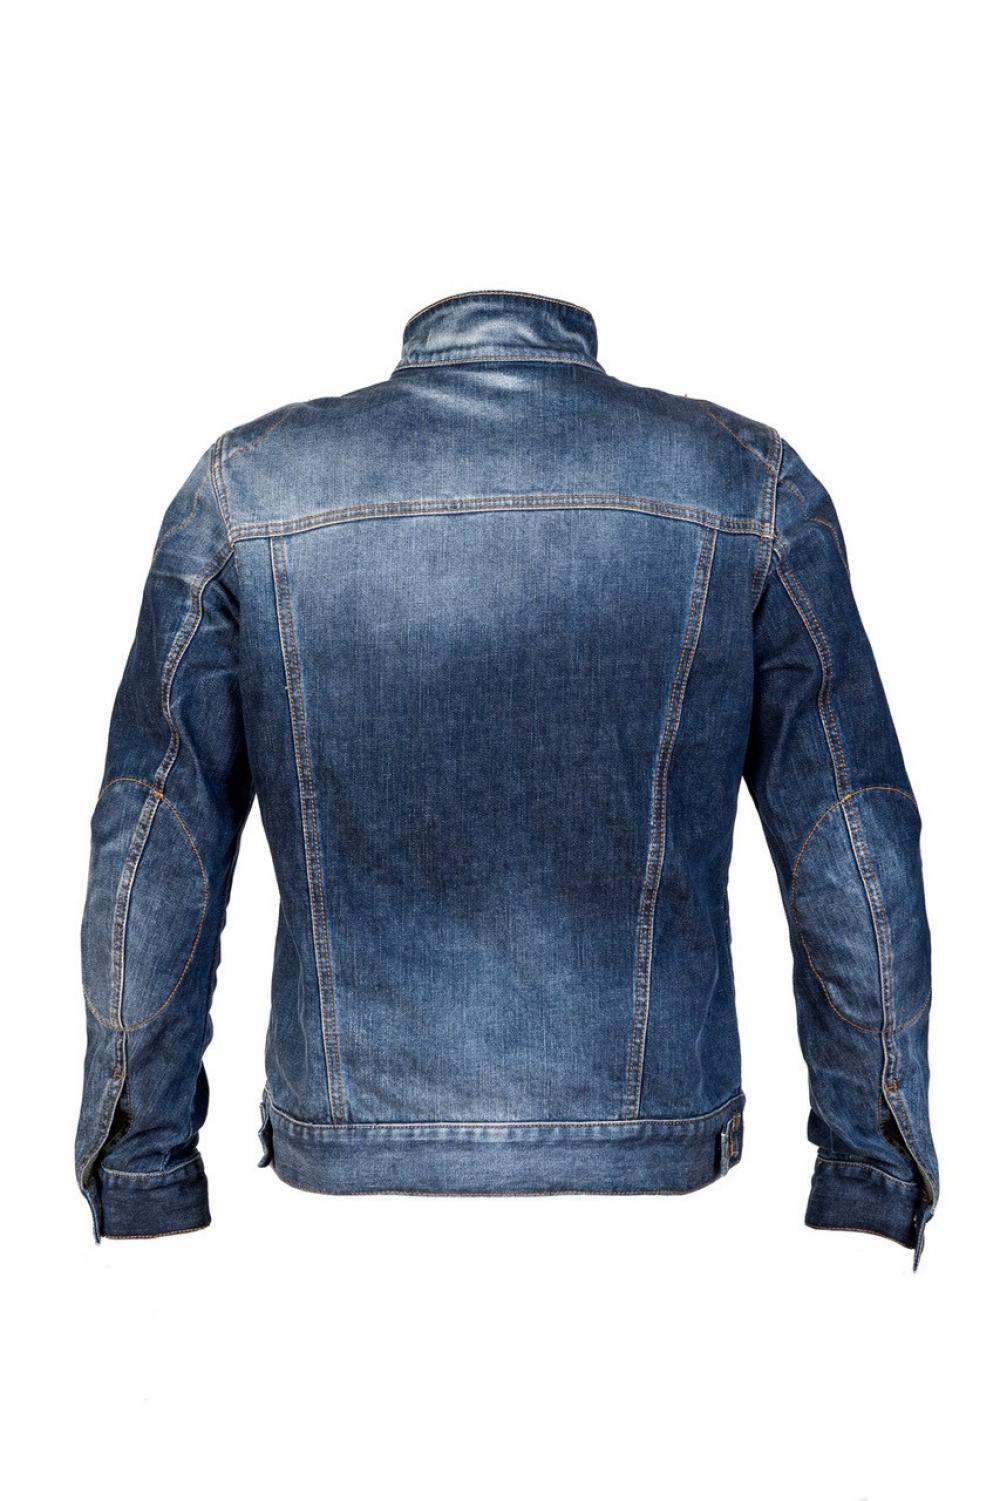 Jeans moto per uomo: vendita online delle migliori marche